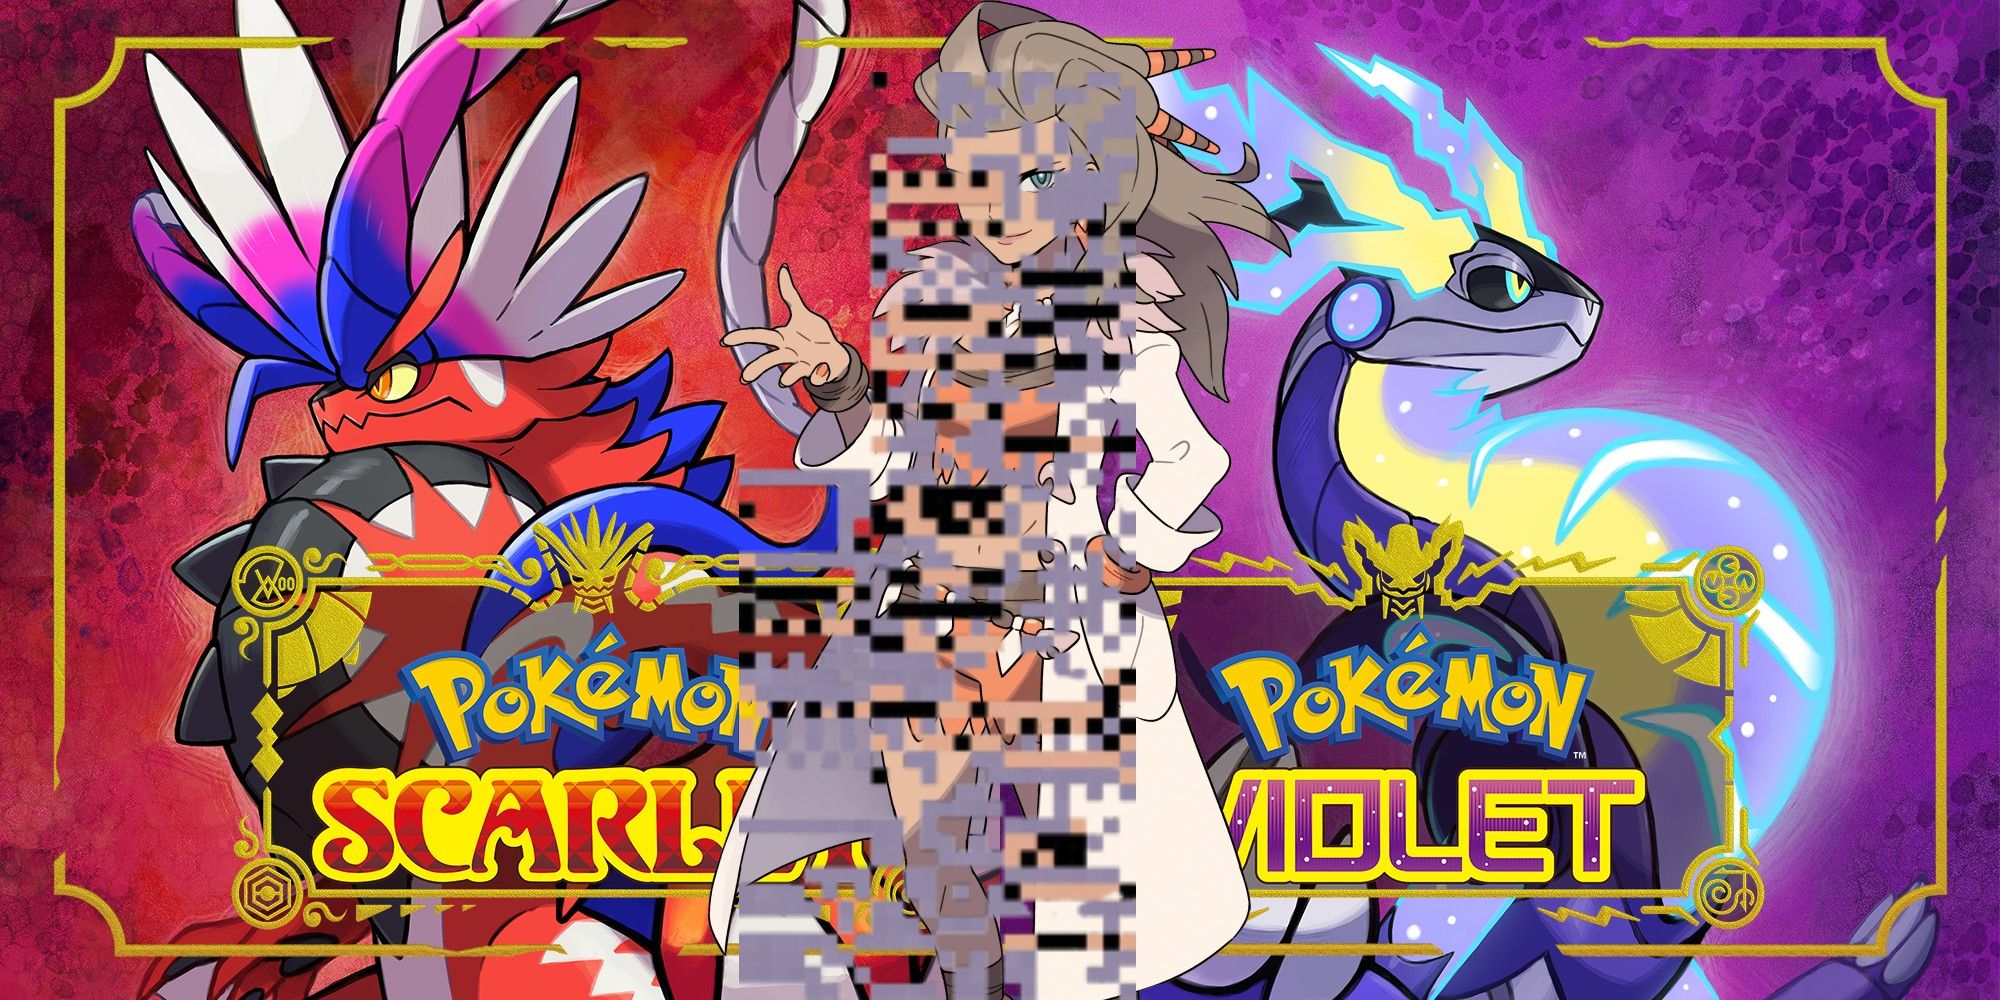 Glitched Professor Sada in front of Pokémon Scarlet & Violet's cover artworks.